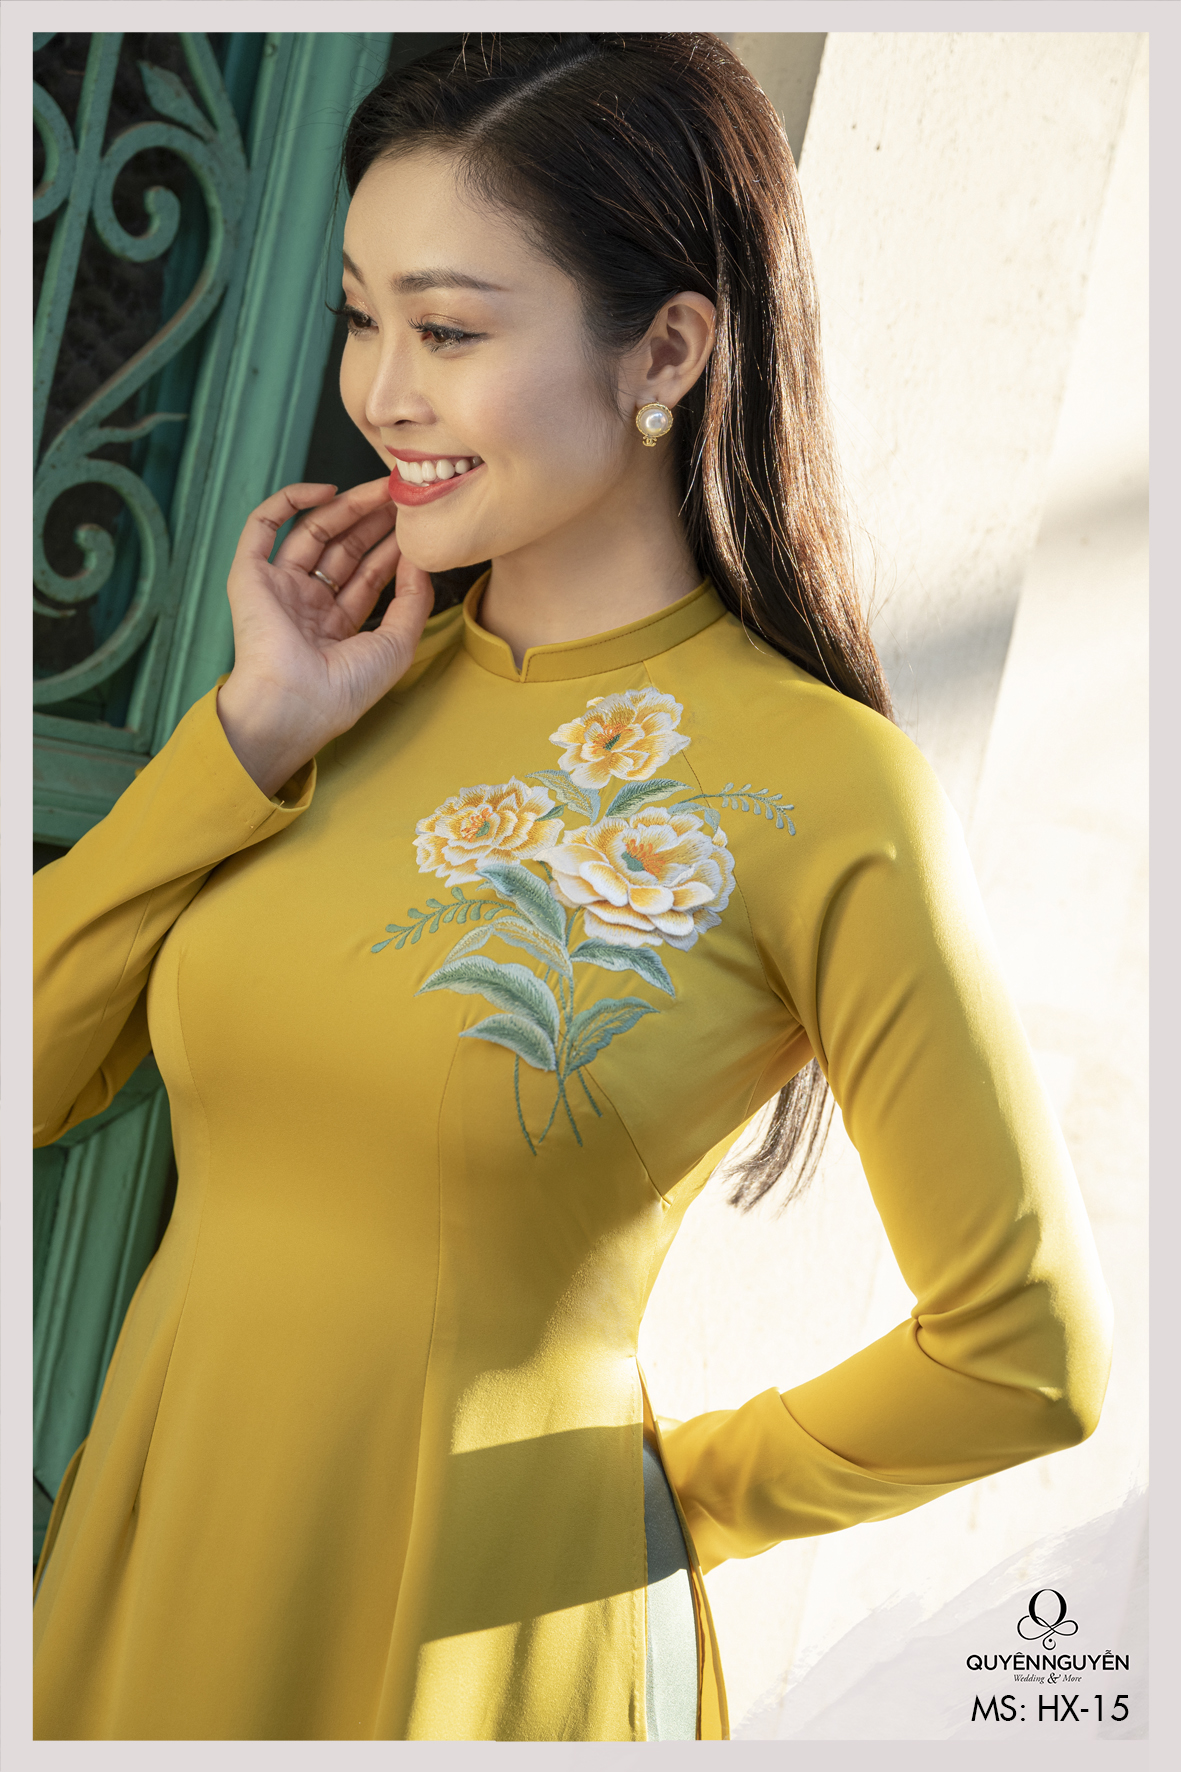 Áo dài Tết vàng với chiếc cúc Họa Mi là biểu tượng của văn hóa truyền thống Việt Nam. Hãy xem hình ảnh của chúng tôi để thấy nét đẹp tuyệt vời mà chiếc áo dài Tết vàng và bông hoa cúc Họa Mi mang lại.